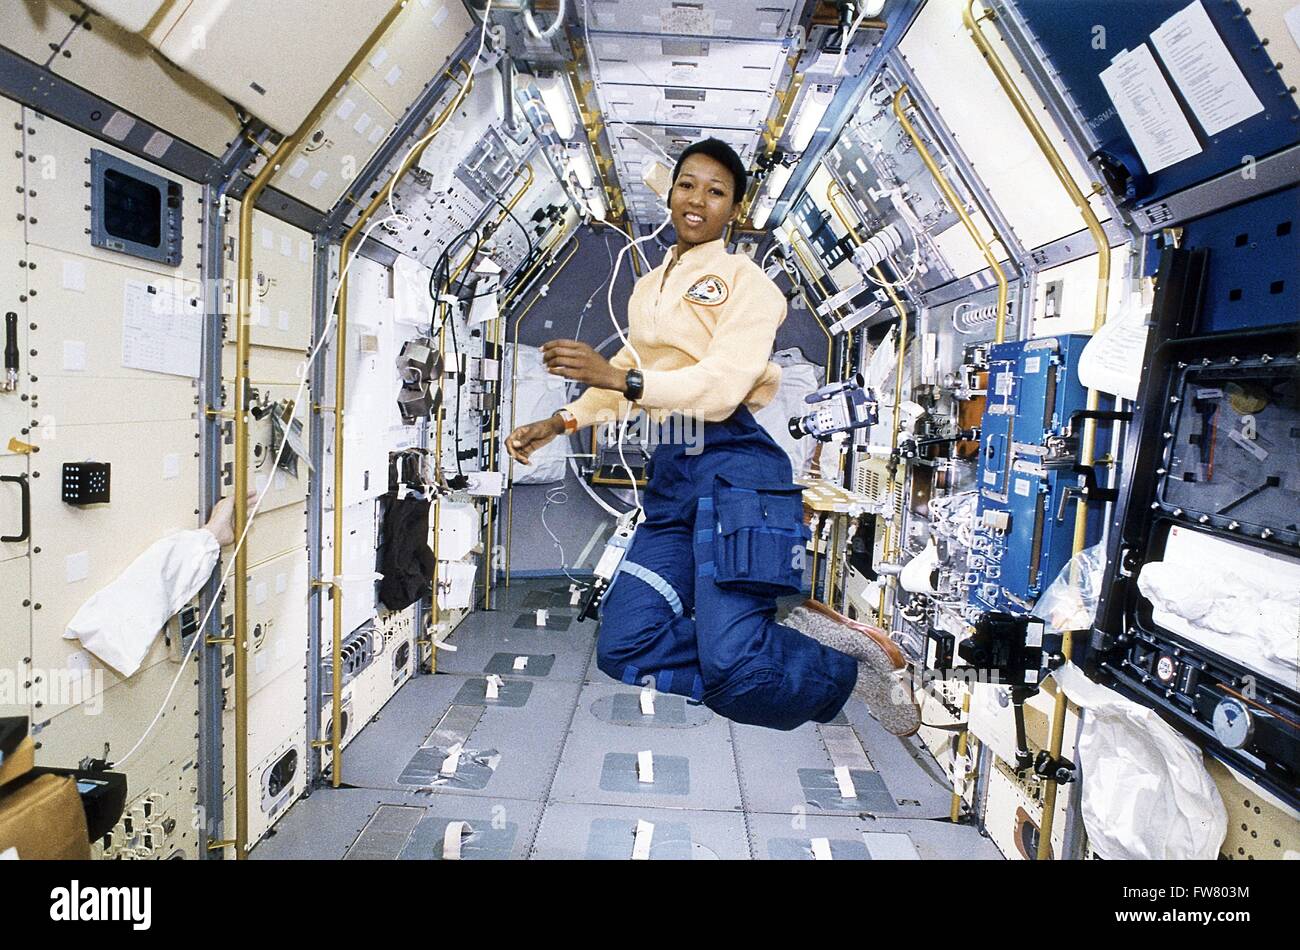 Astronauta Dottor Mae Jamison lavorando in Spacelab-J modulo a bordo della navetta spaziale Endeavour Ottobre 22, 1992 in orbita intorno alla terra. Jamison è diventata la prima donna afro-americana a volare nello spazio. Foto Stock